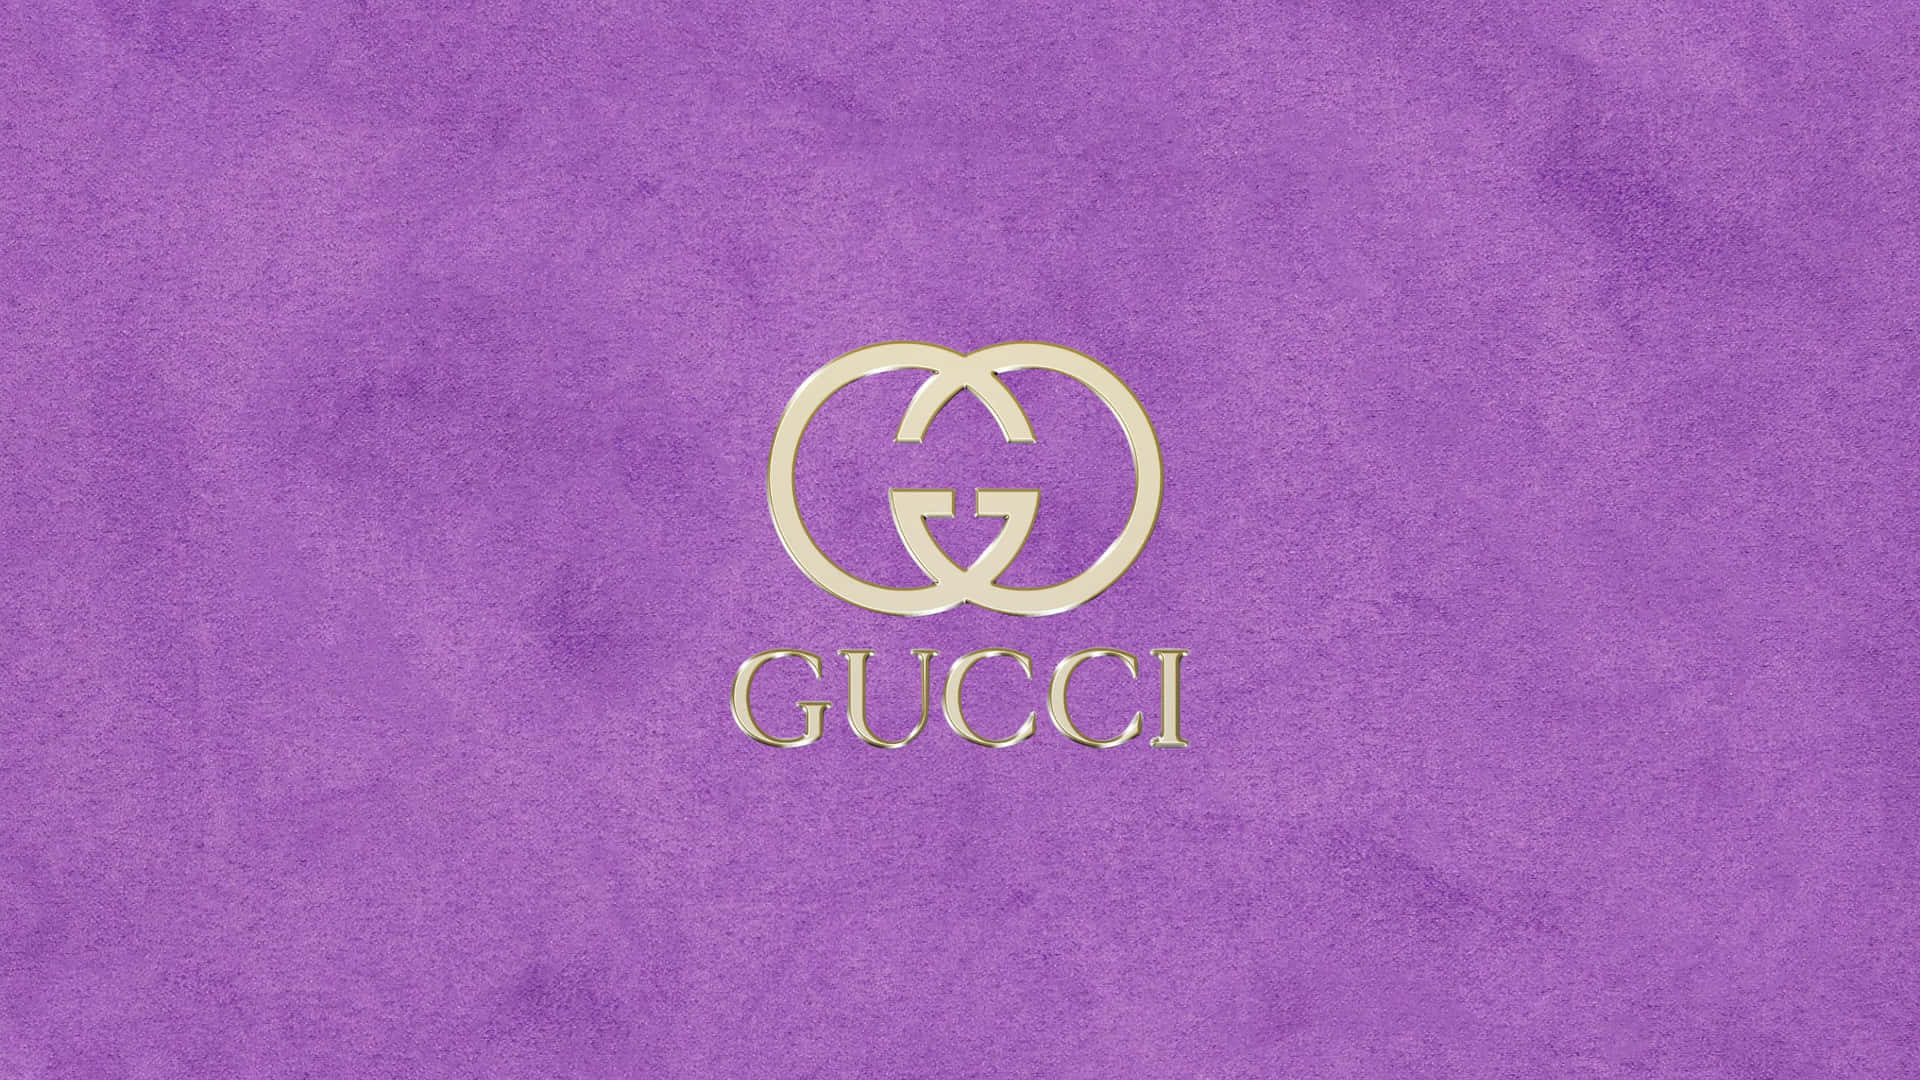 Skin dig strålende i det luksuriøse Purple Gucci print. Wallpaper